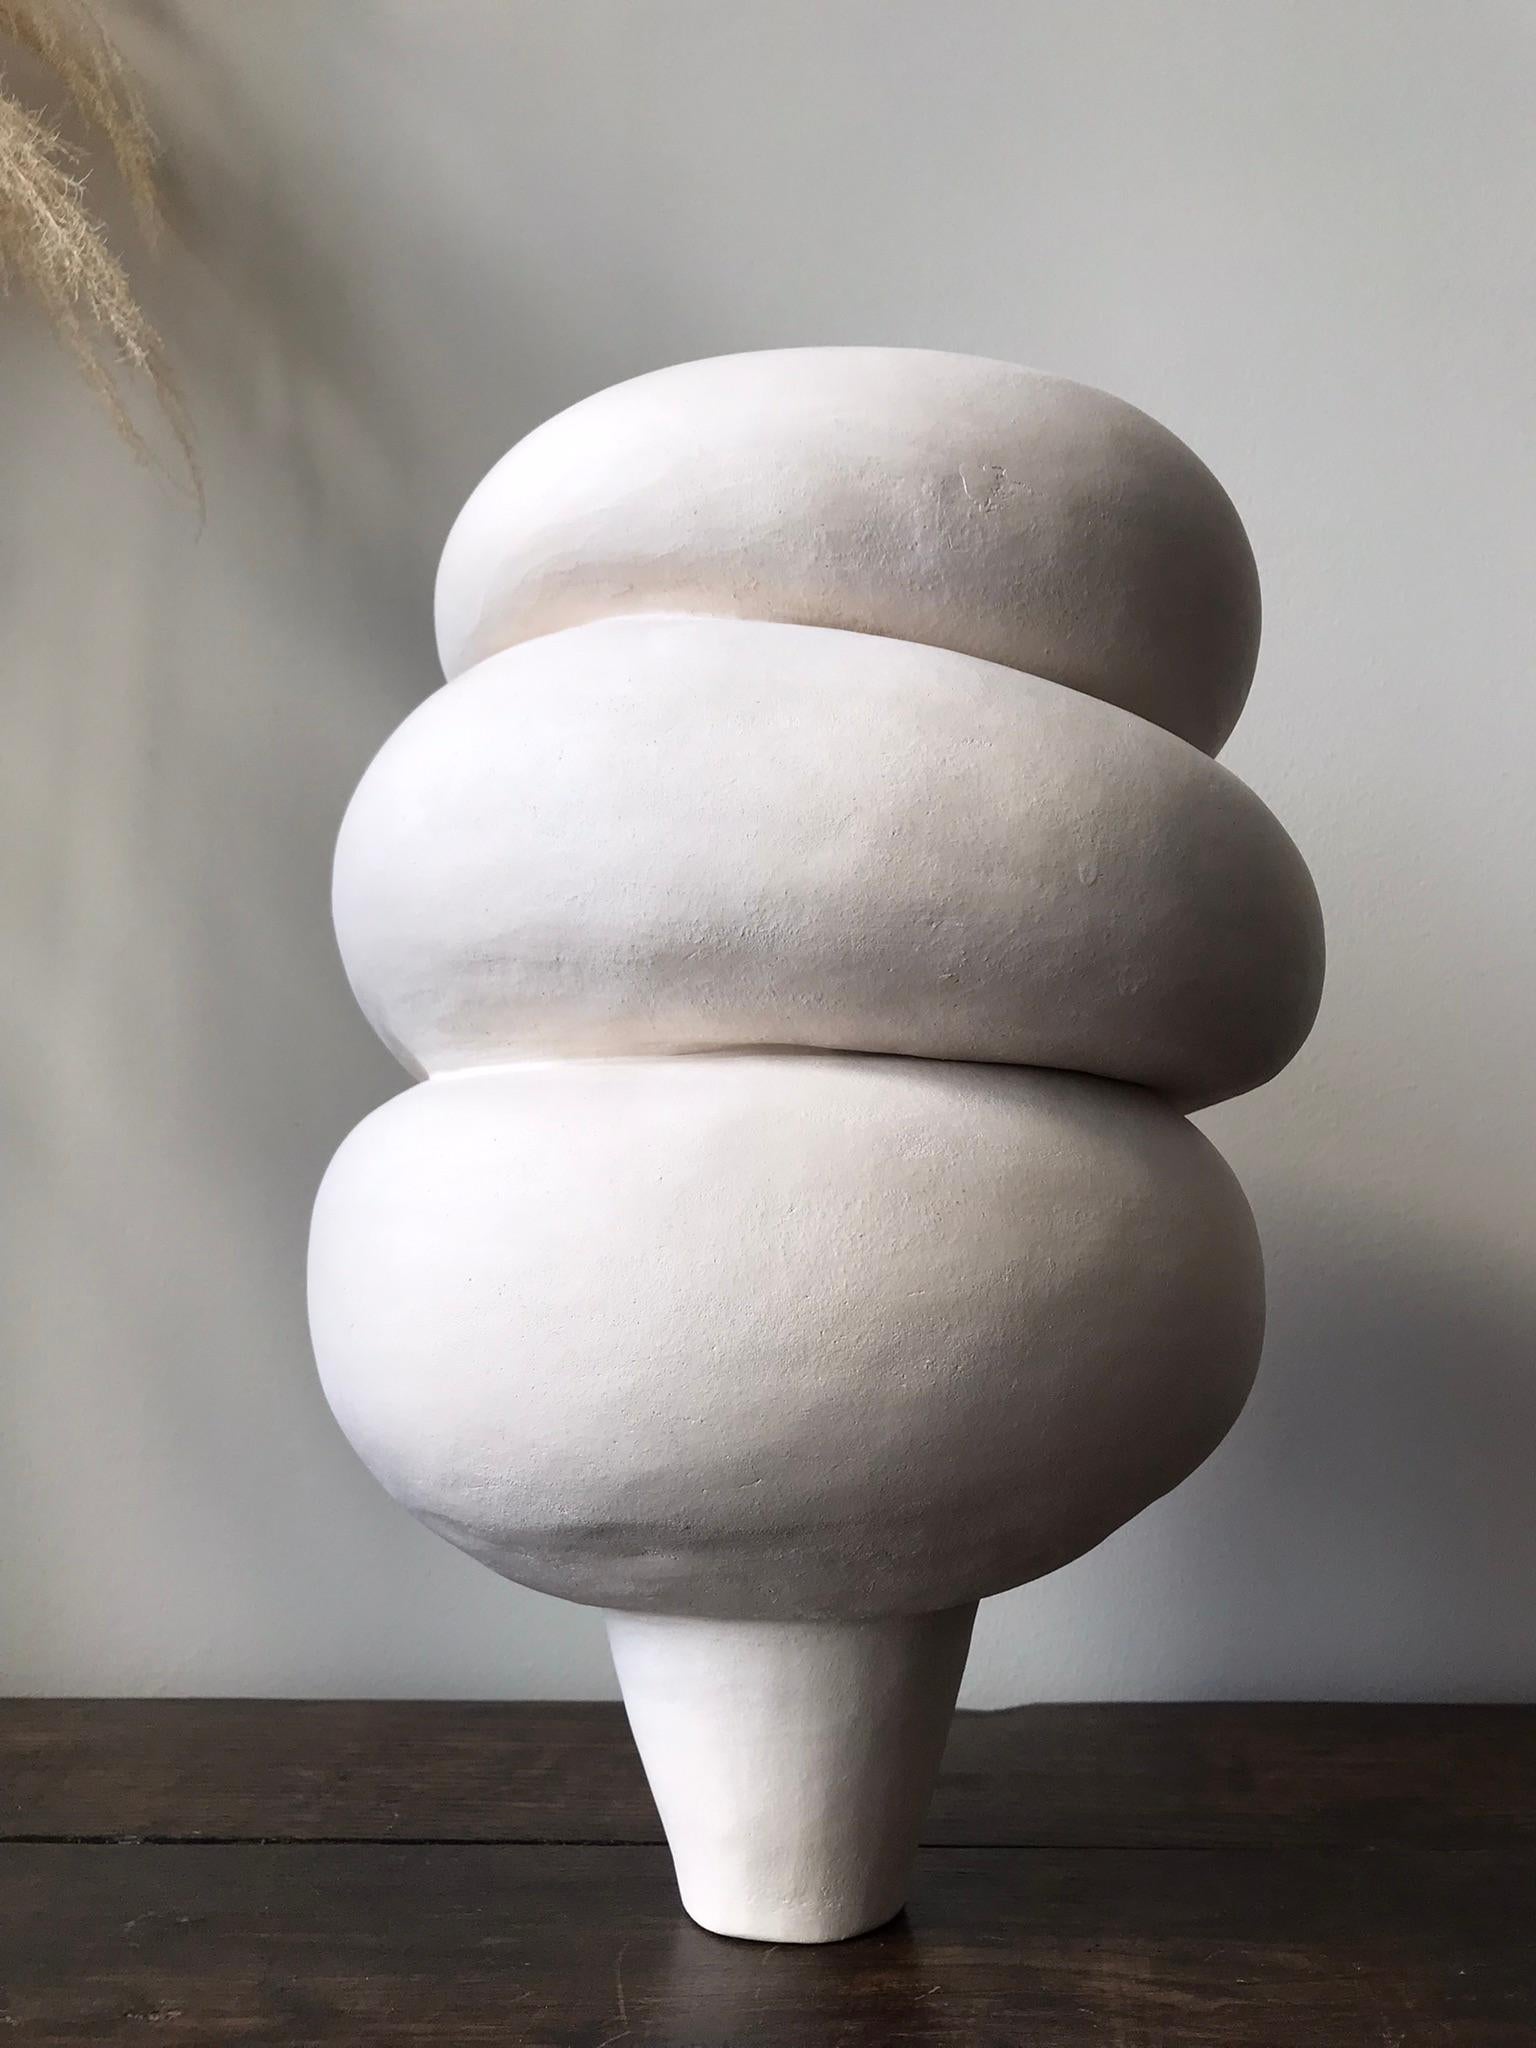 Non vernissé Art sculptural céramique contemporain néerlandais Modder Calmness par Françoise Jeffrey en vente